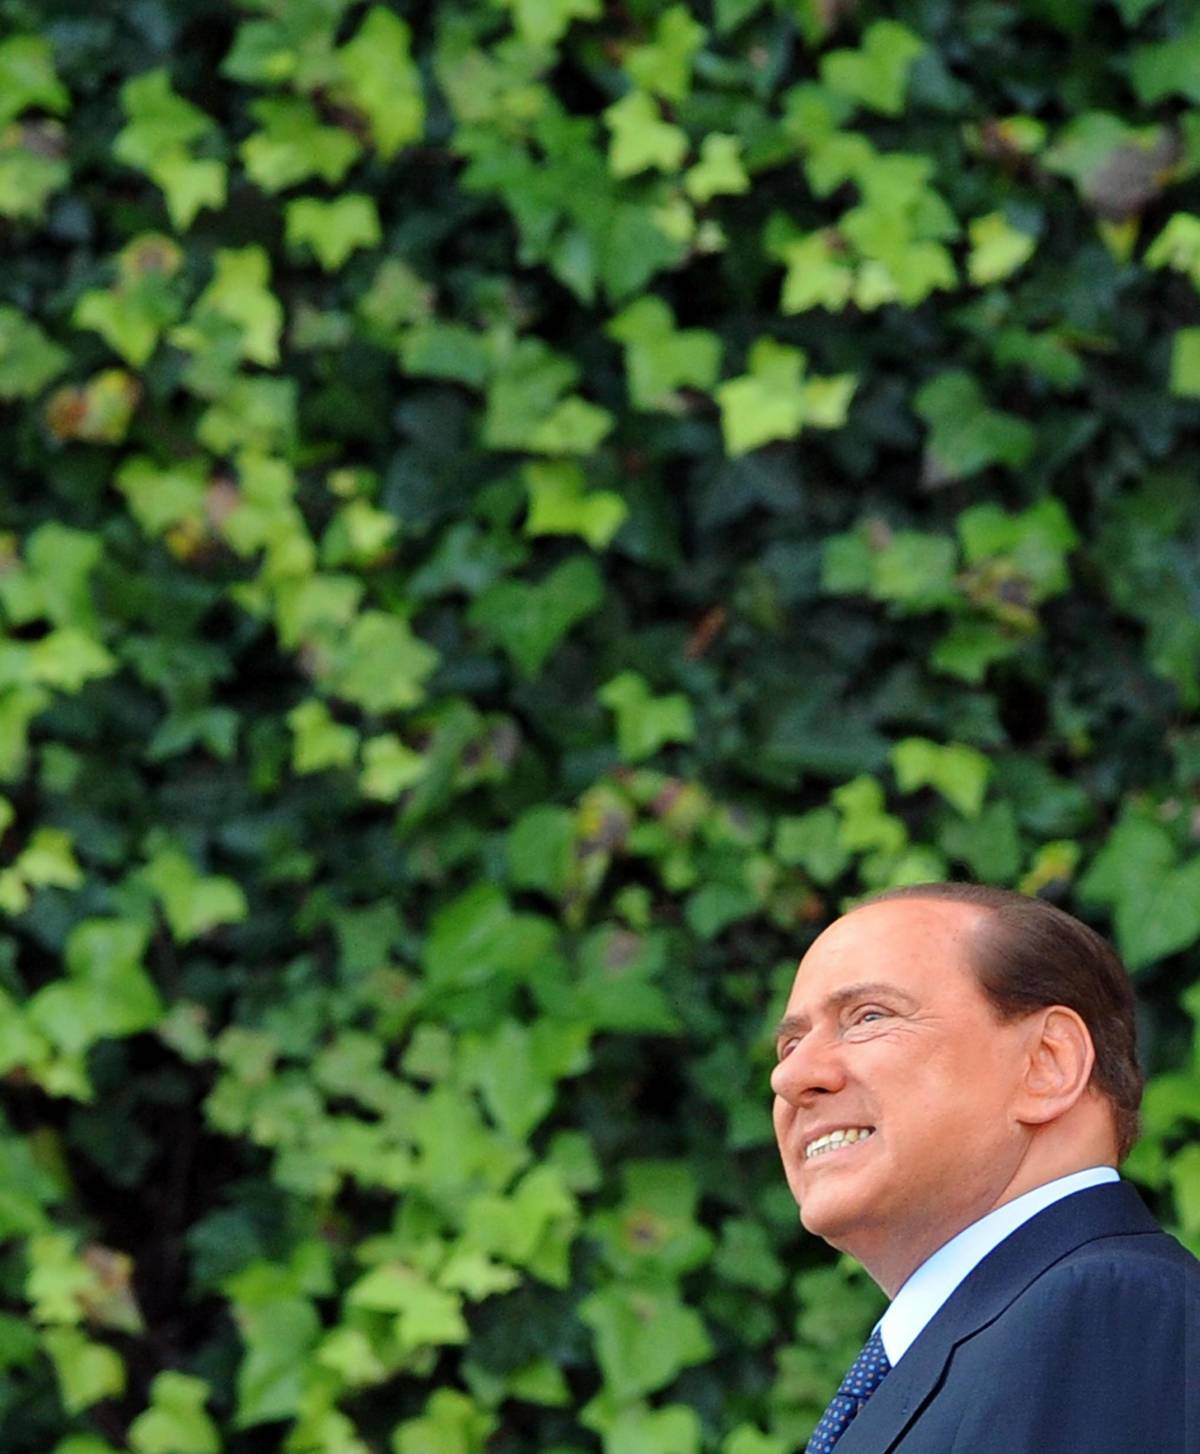 Riforma del Fisco, Berlusconi incalza Tremonti:  
"Ora dobbiamo aprire i cordoni della borsa"